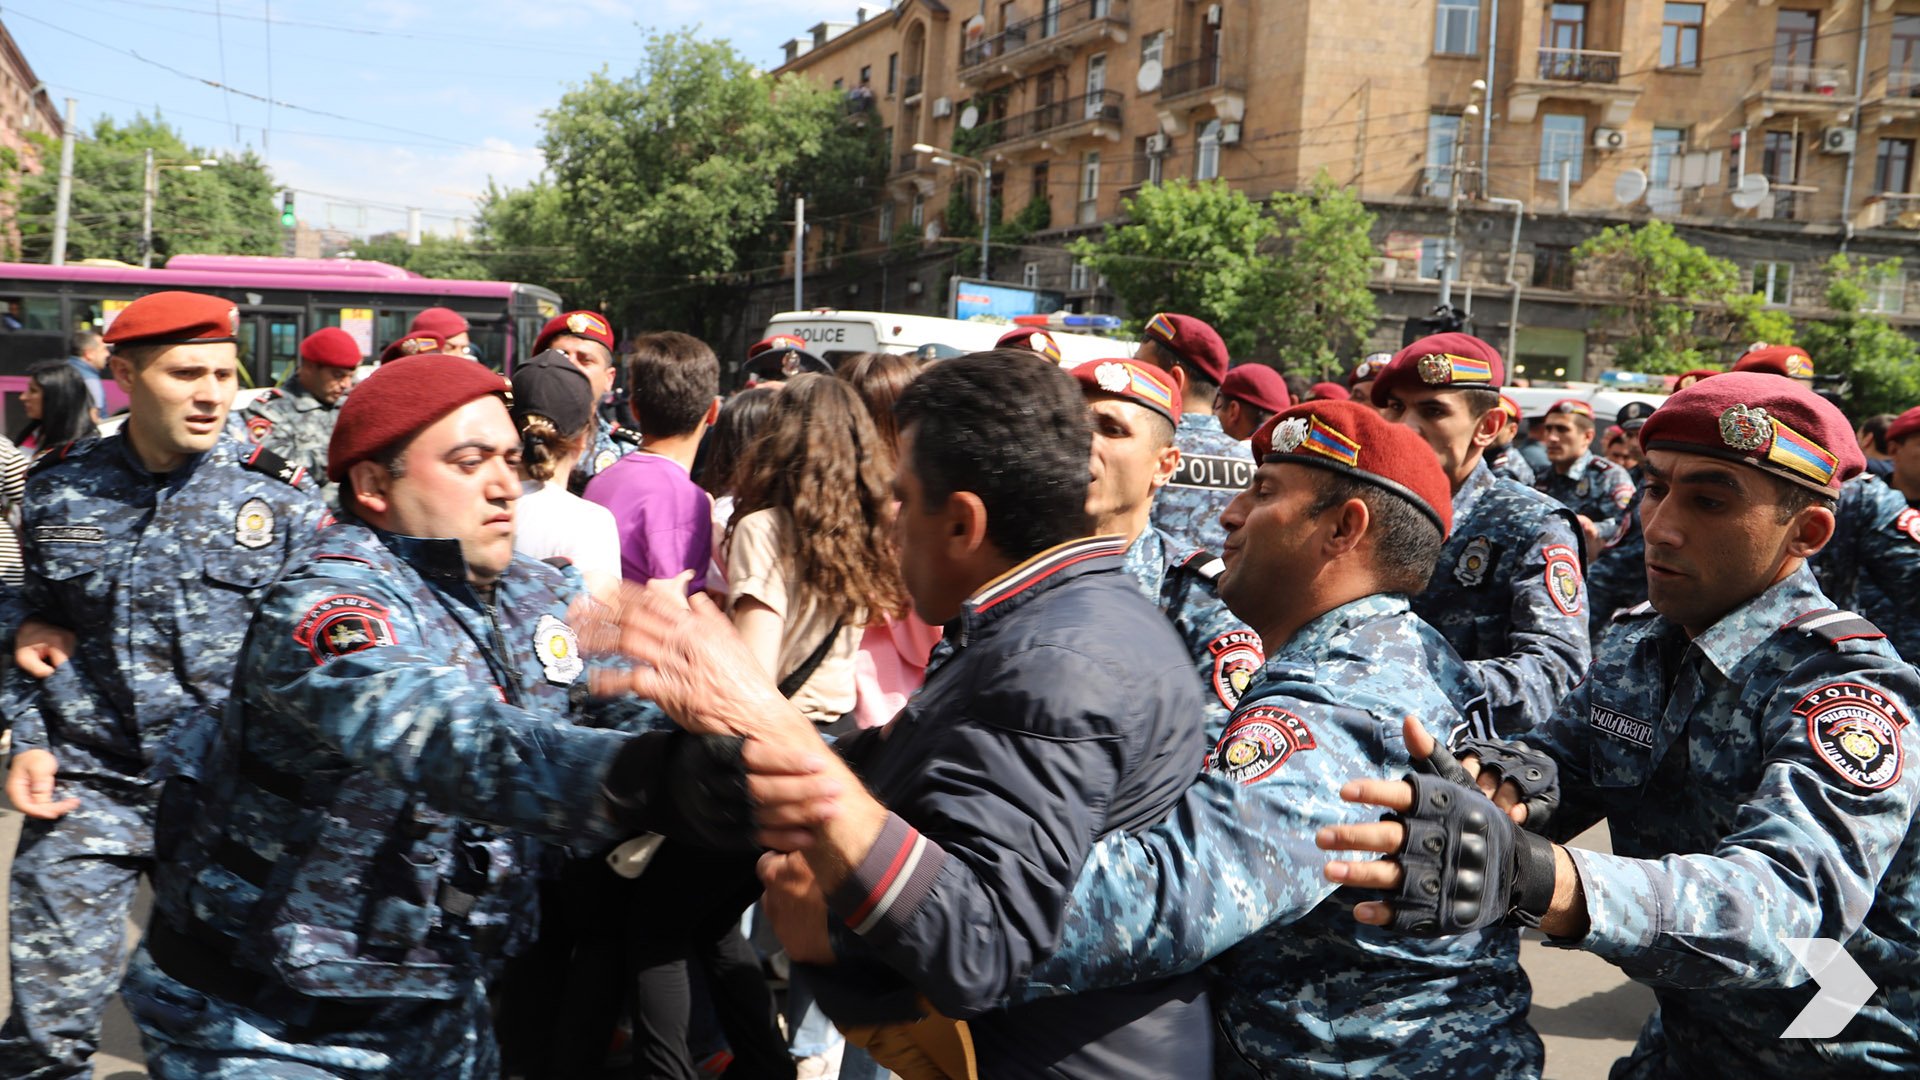 Ցուցարարների նկատմամբ ոստիկանության բռնությունների դեպքերով հարուցվել են քրգործեր․ azatutyun.am